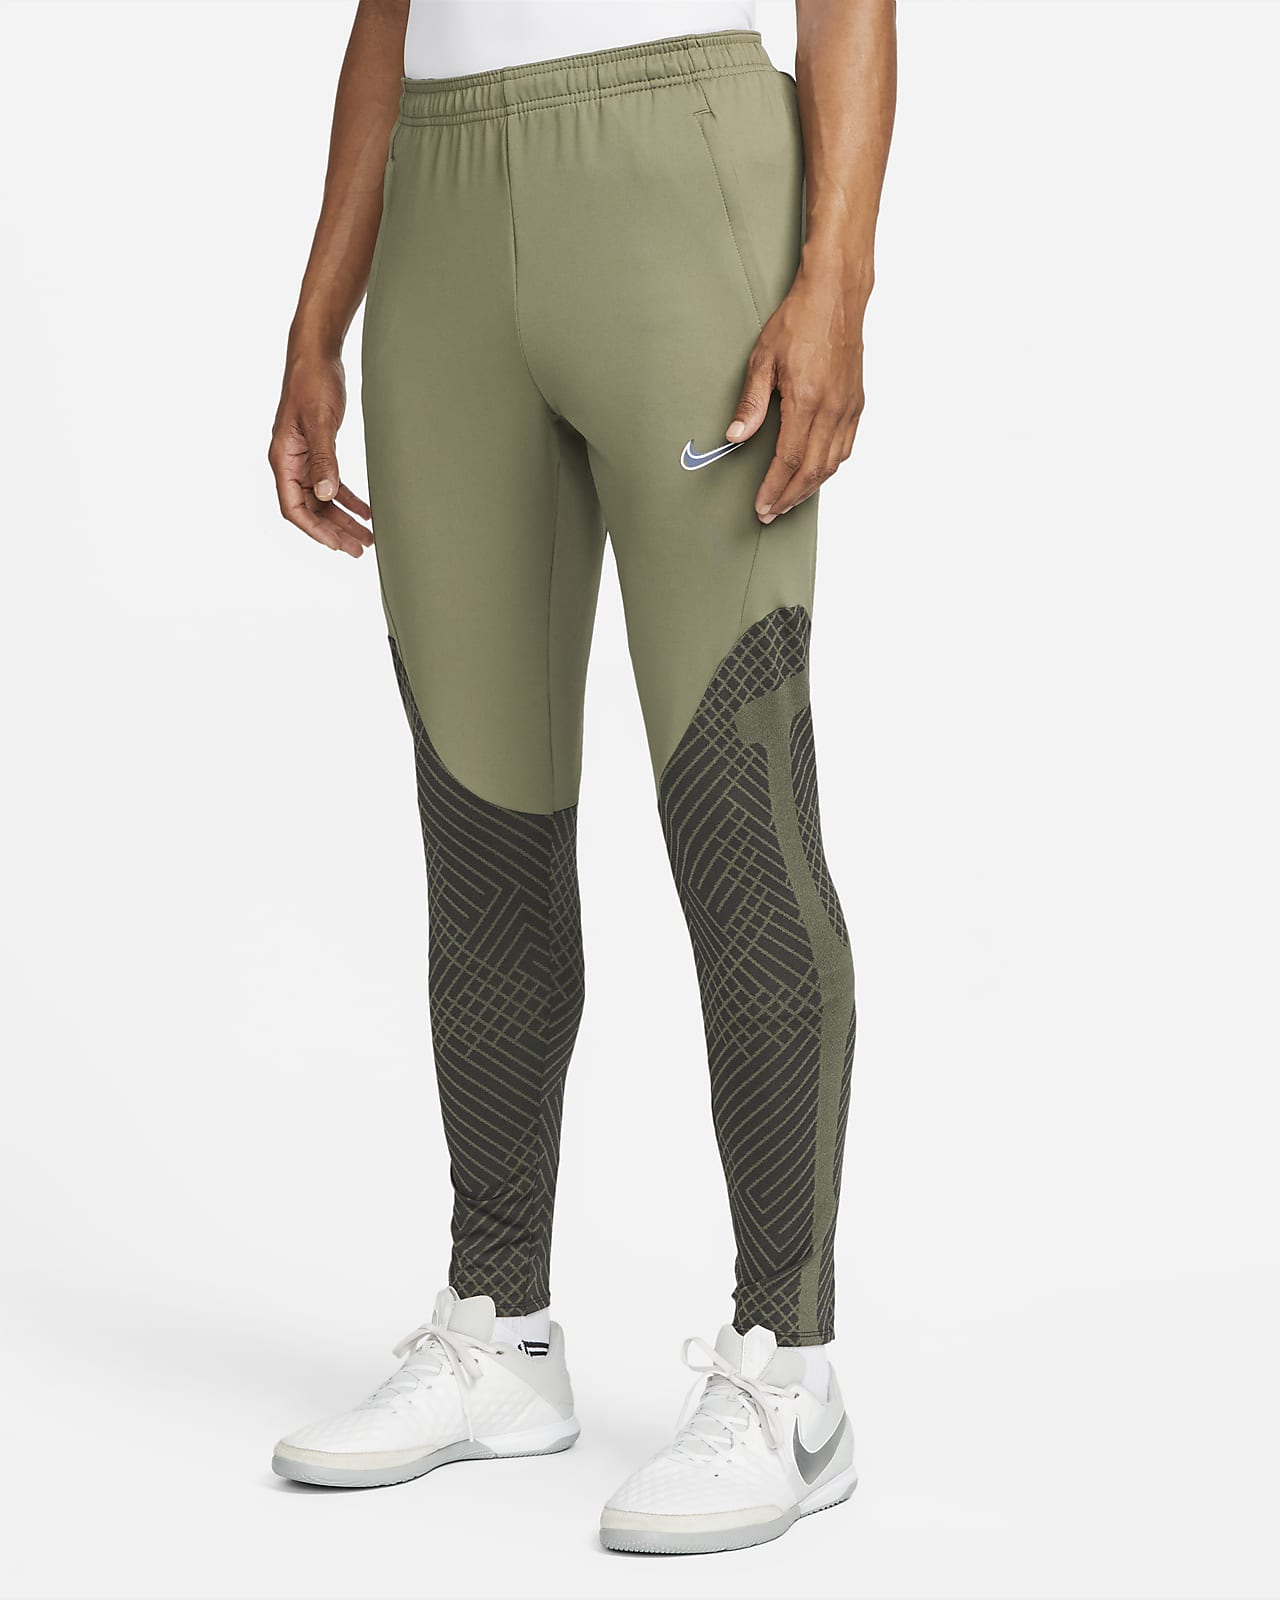 Nike Soccer Pants | Best Price Guarantee at DICK'S